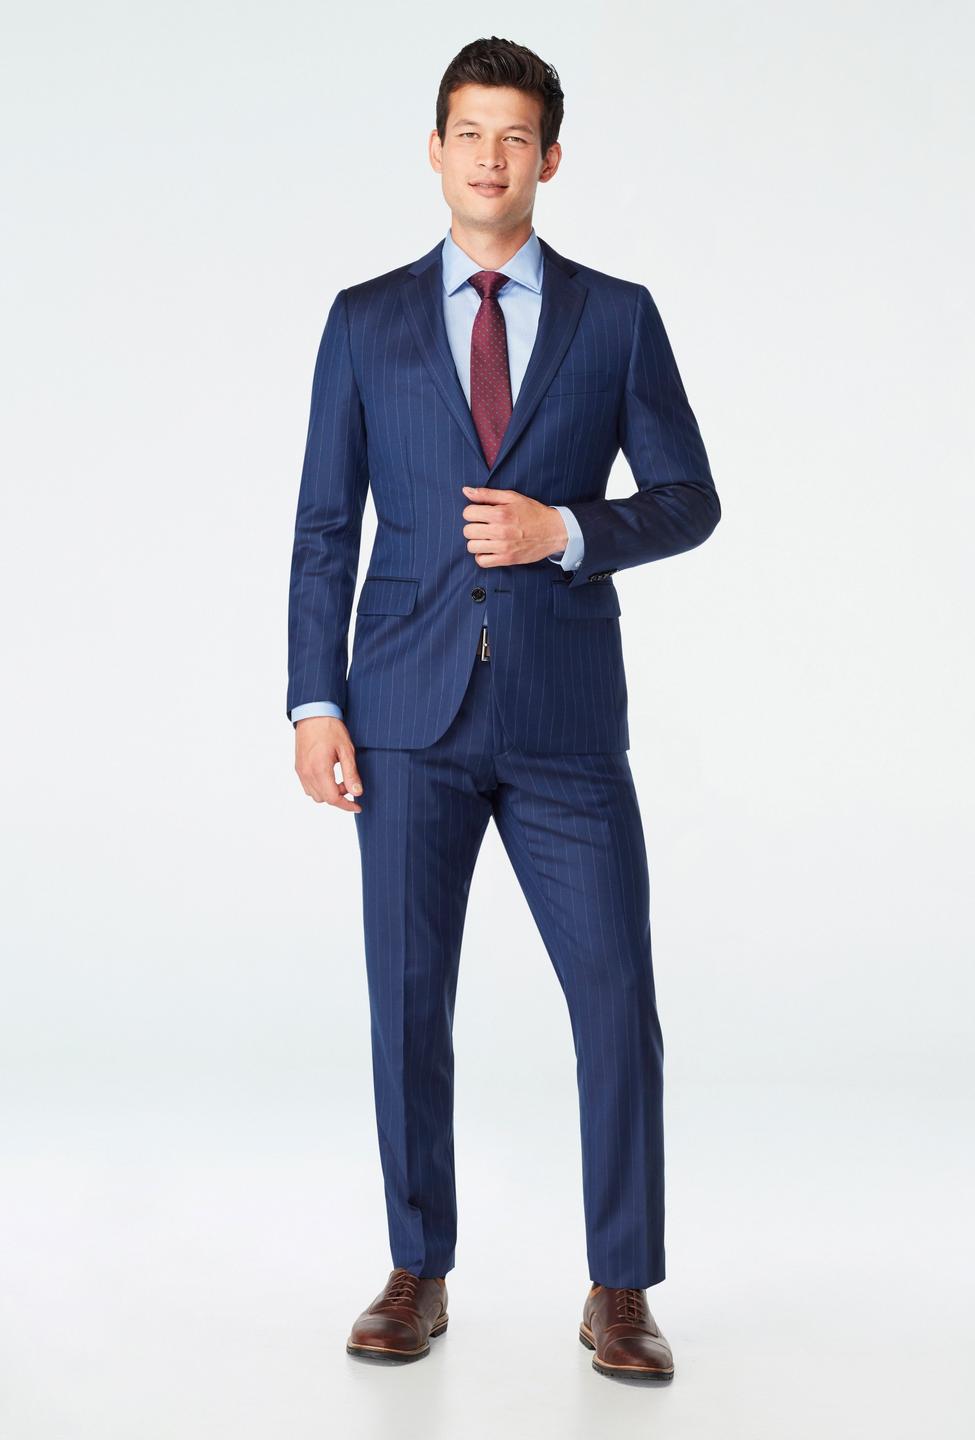 Blue blazer - Hemsworth Striped Design from Premium Indochino Collection